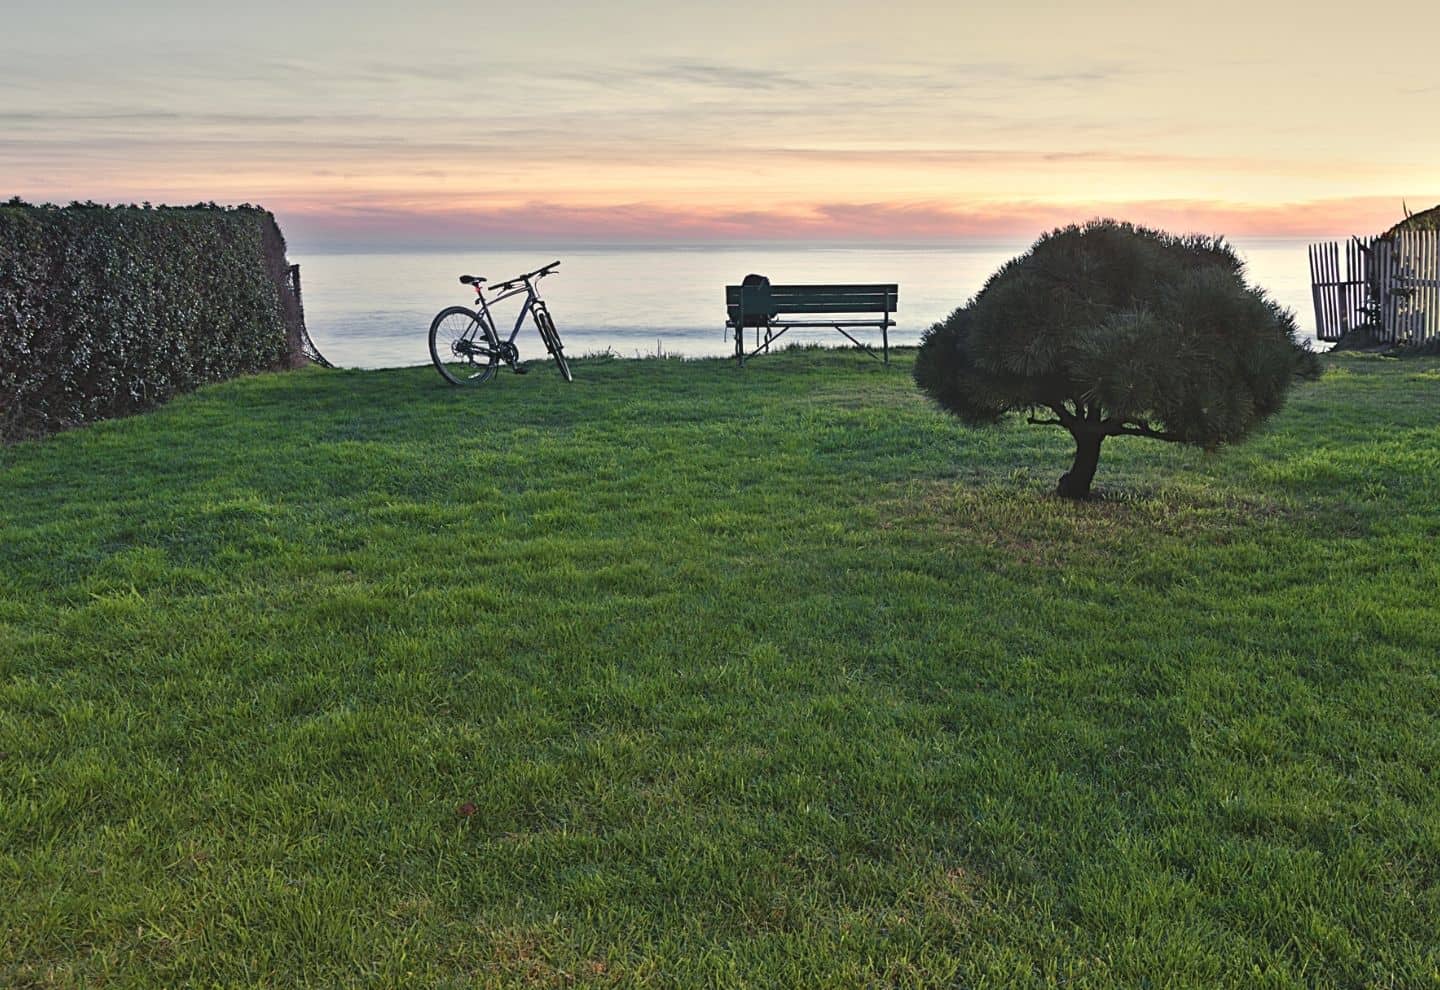 Bike at sunset near the ocean in Santa Cruz!-min